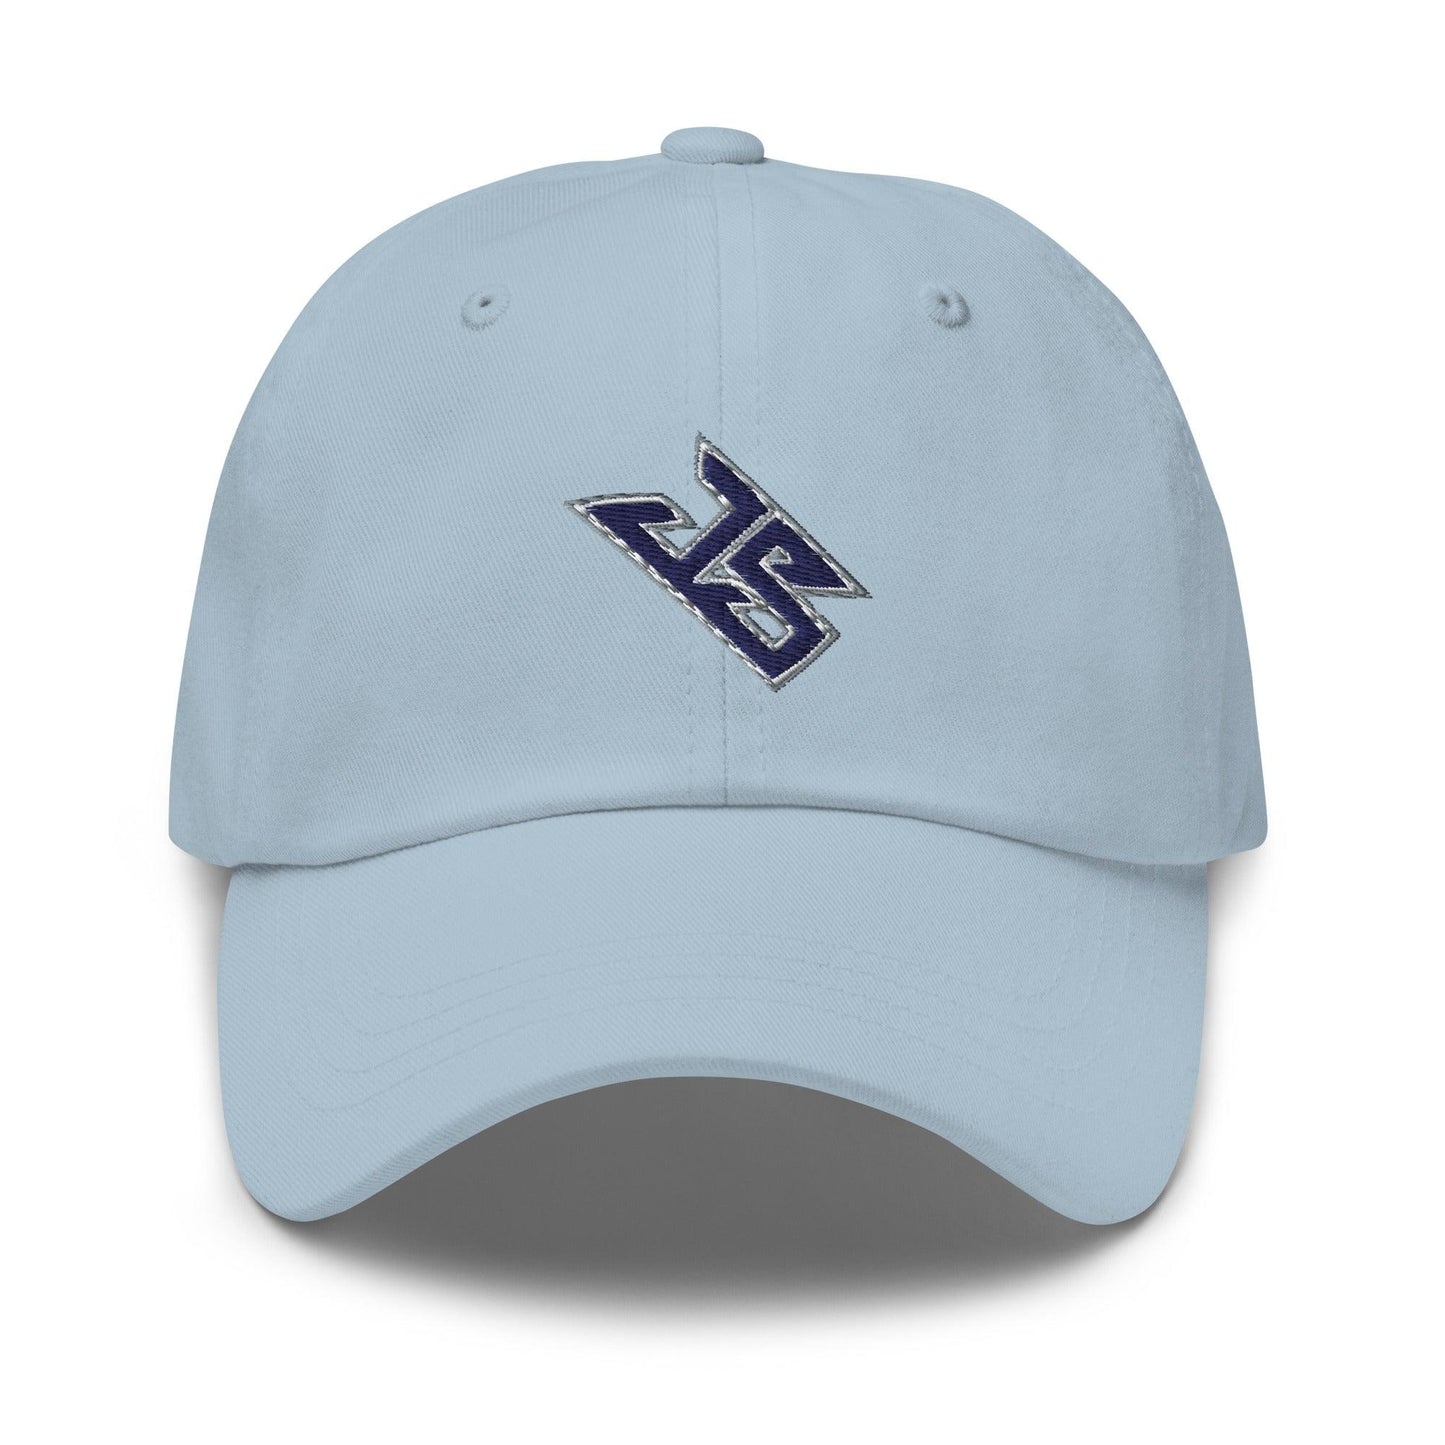 Jaden Shirden "Essential" hat - Fan Arch